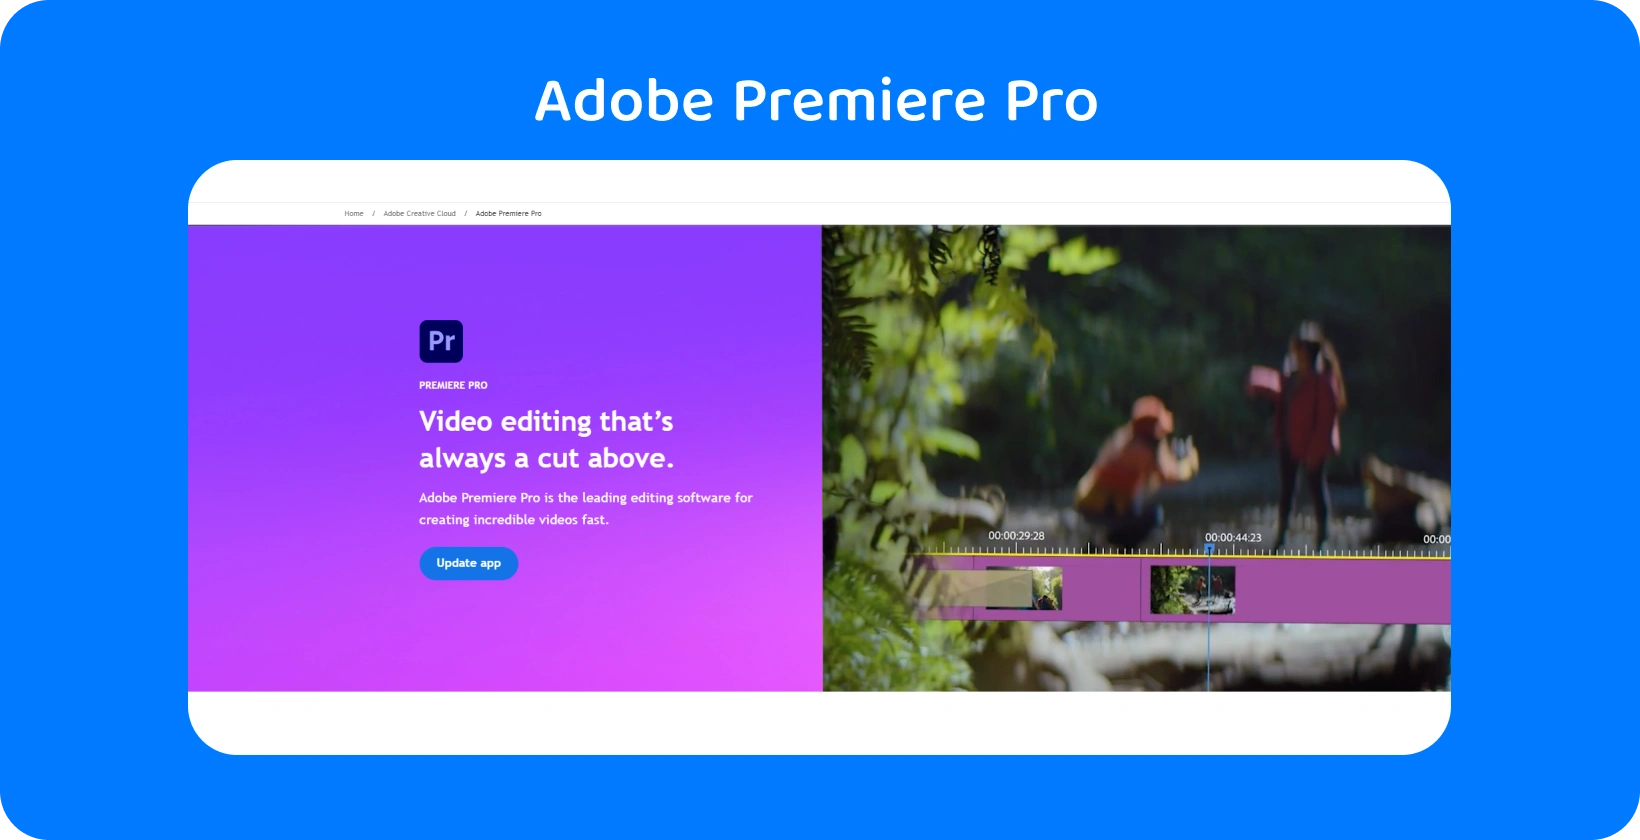 Adobe Premiere Pro interfejs koji prikazuje svoje napredne mogućnosti uređivanja video zapisa, idealne za brza, precizna uređivanja.